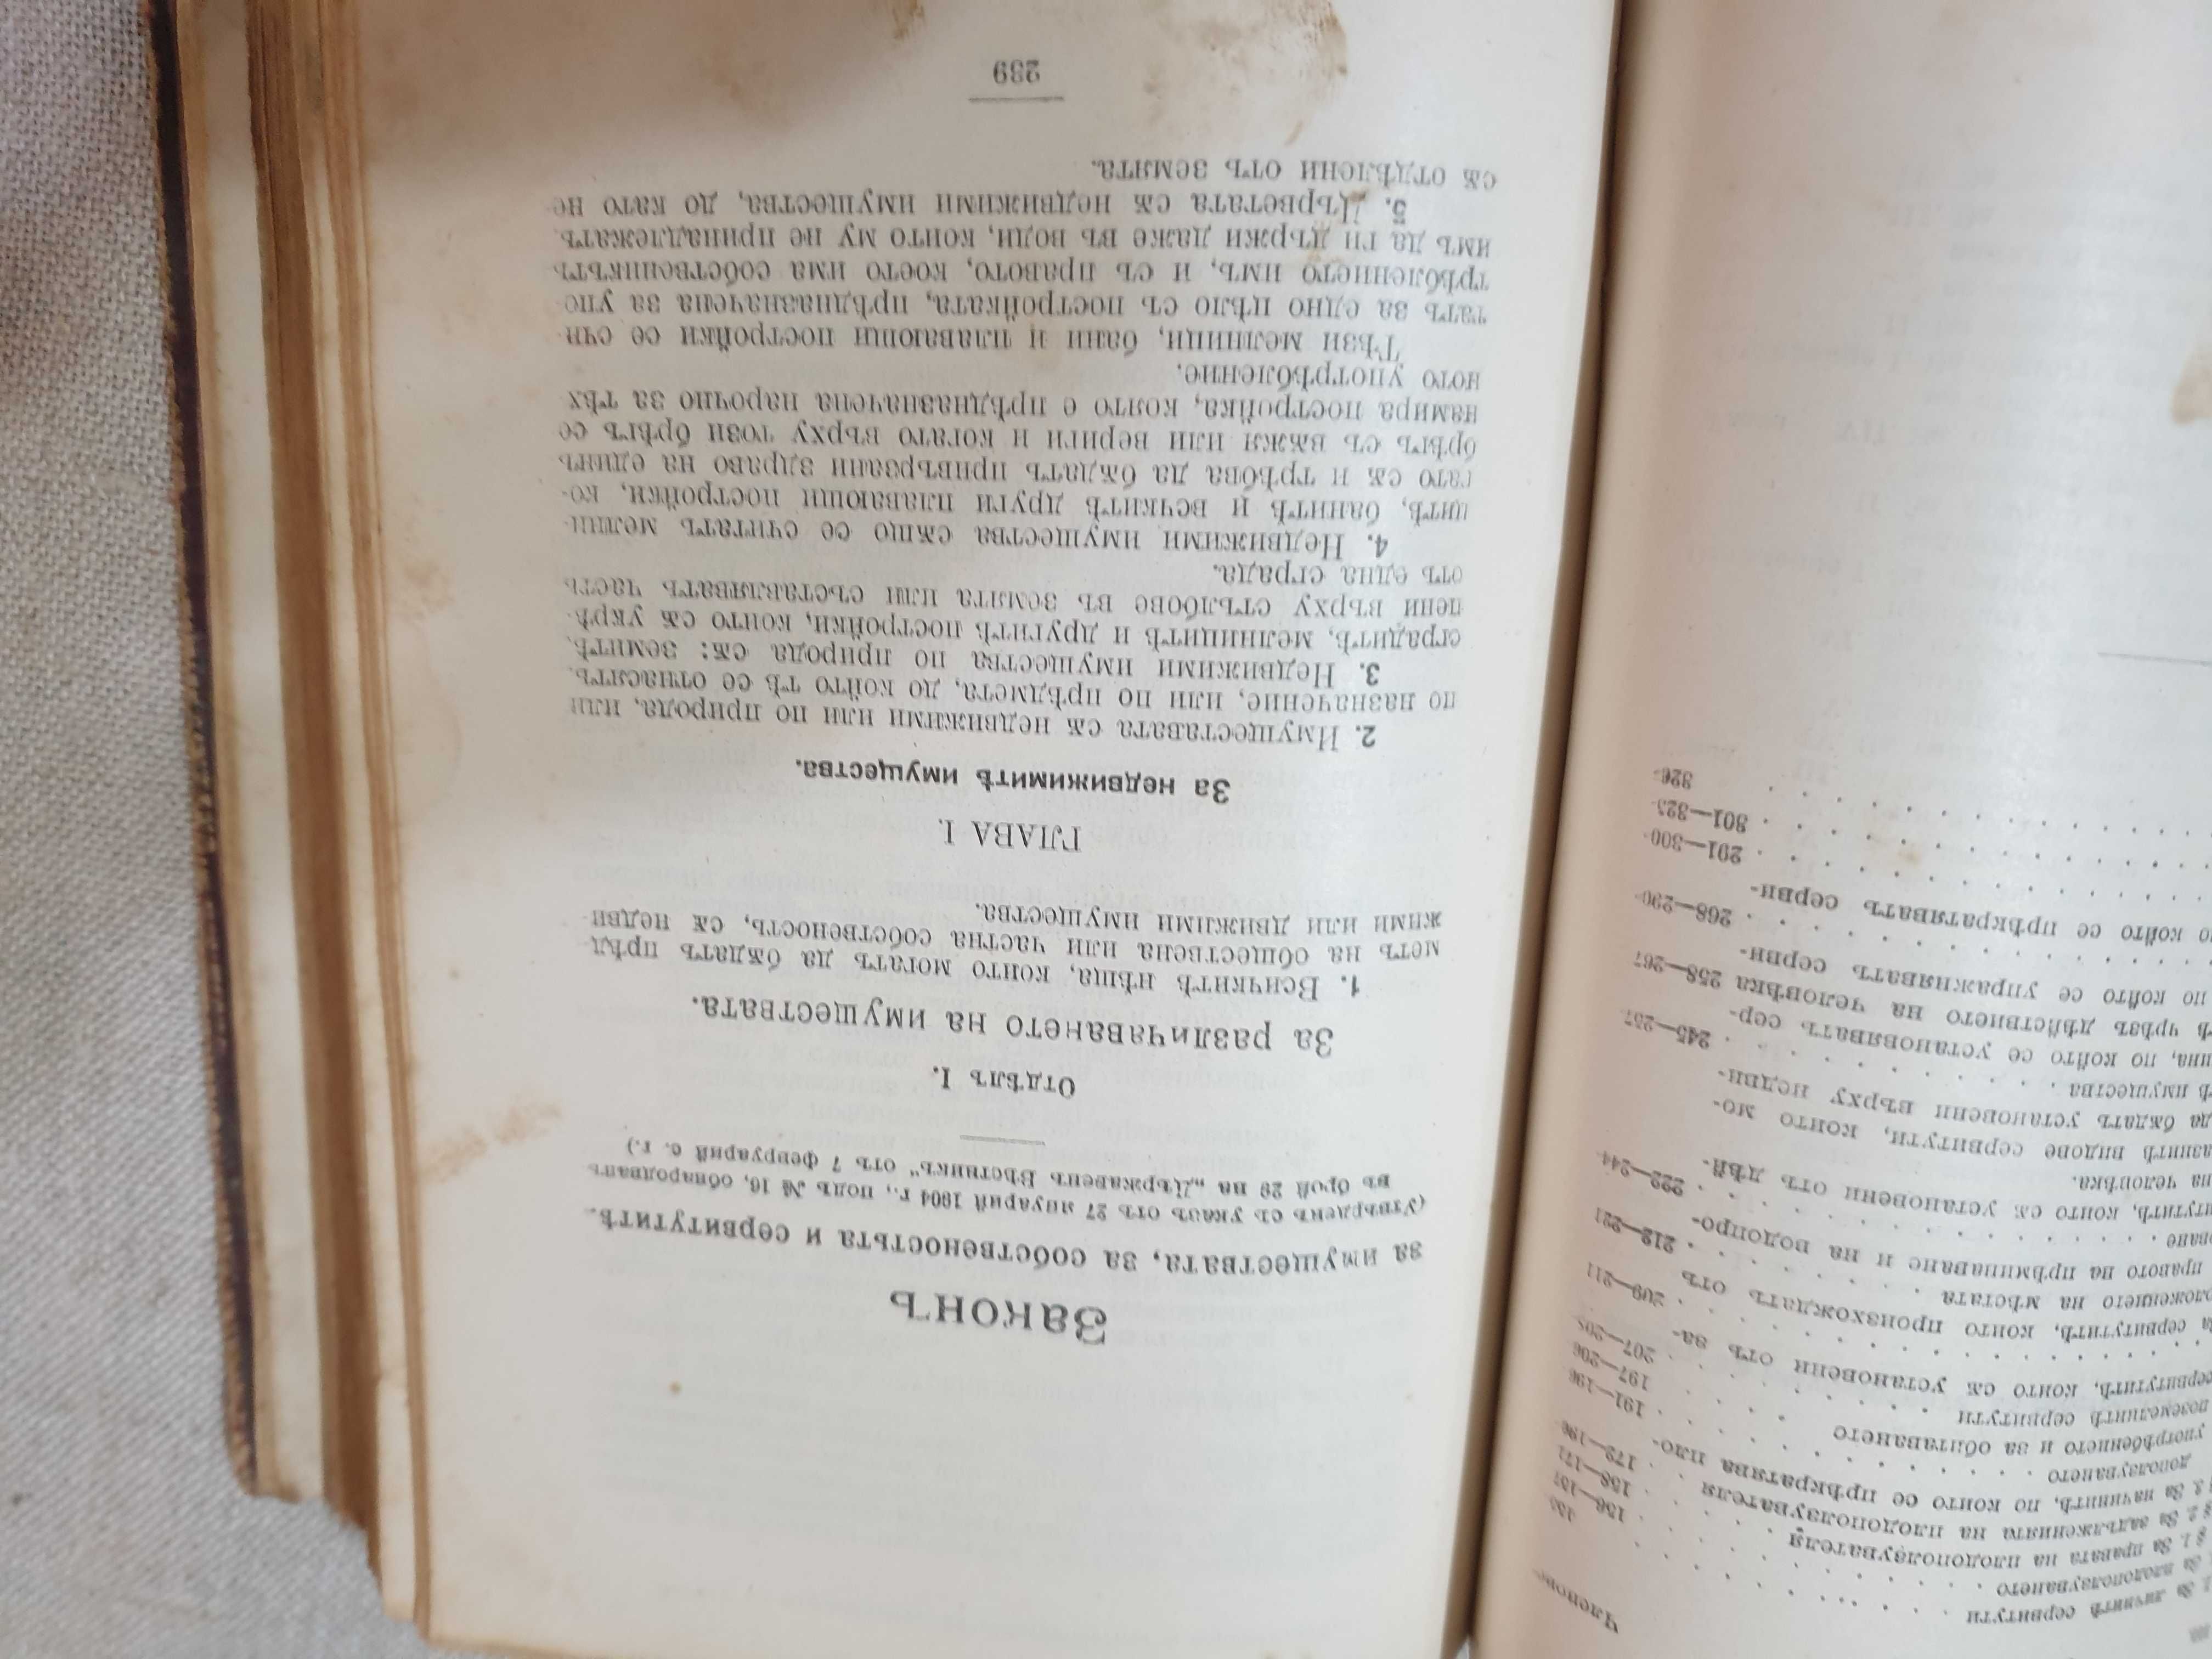 Сборник от действащи съдебни закони на Царство България-1918 година